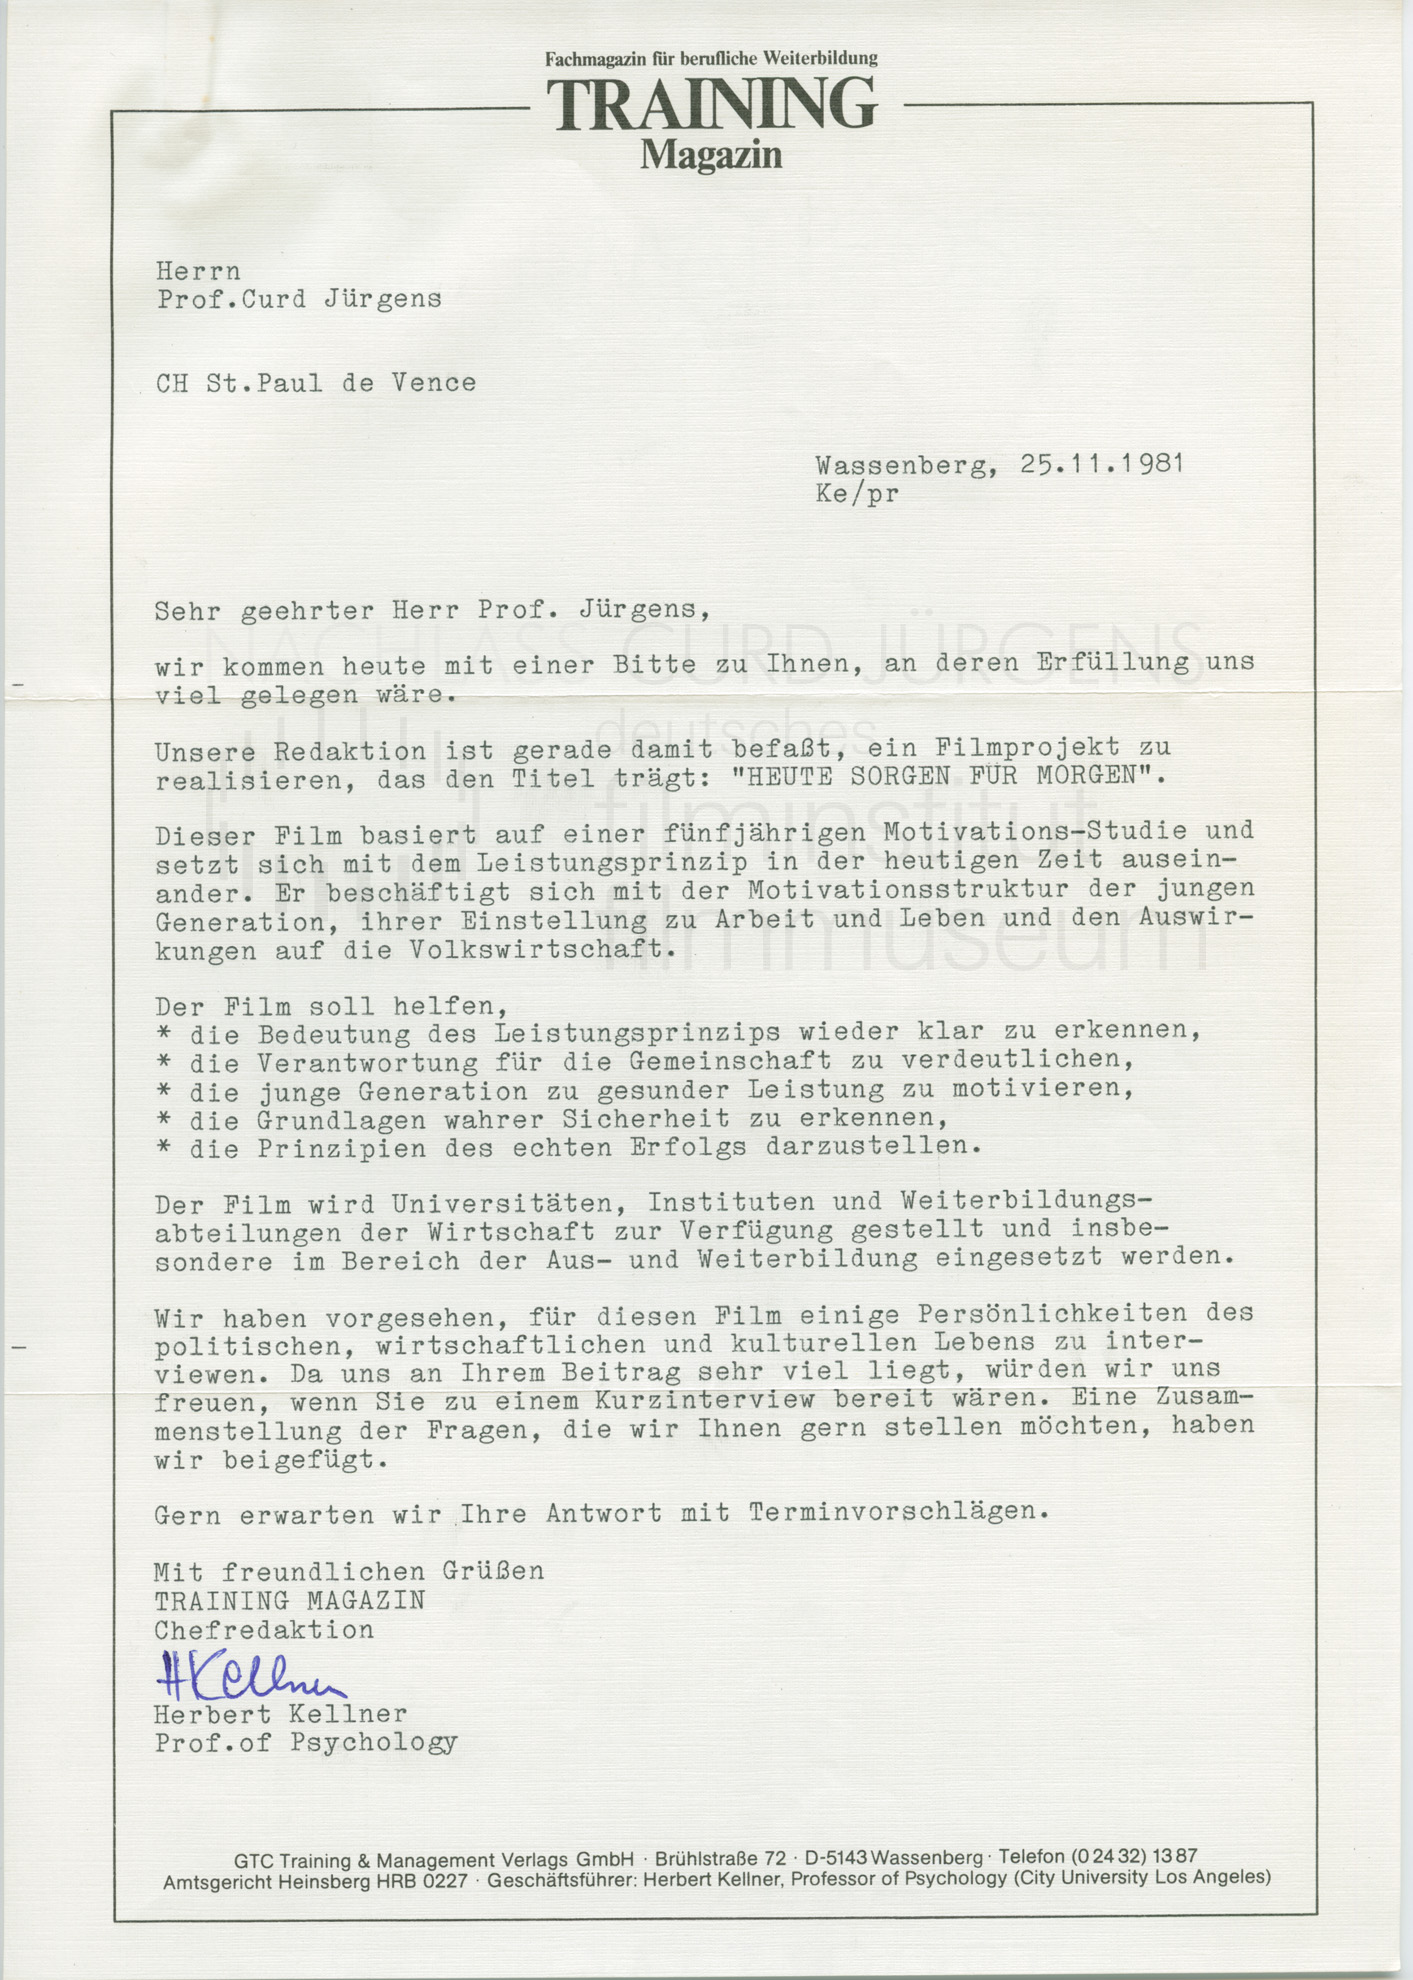 Herbert Kellner an Curd Jürgens. Wassenberg, 25.11.1981